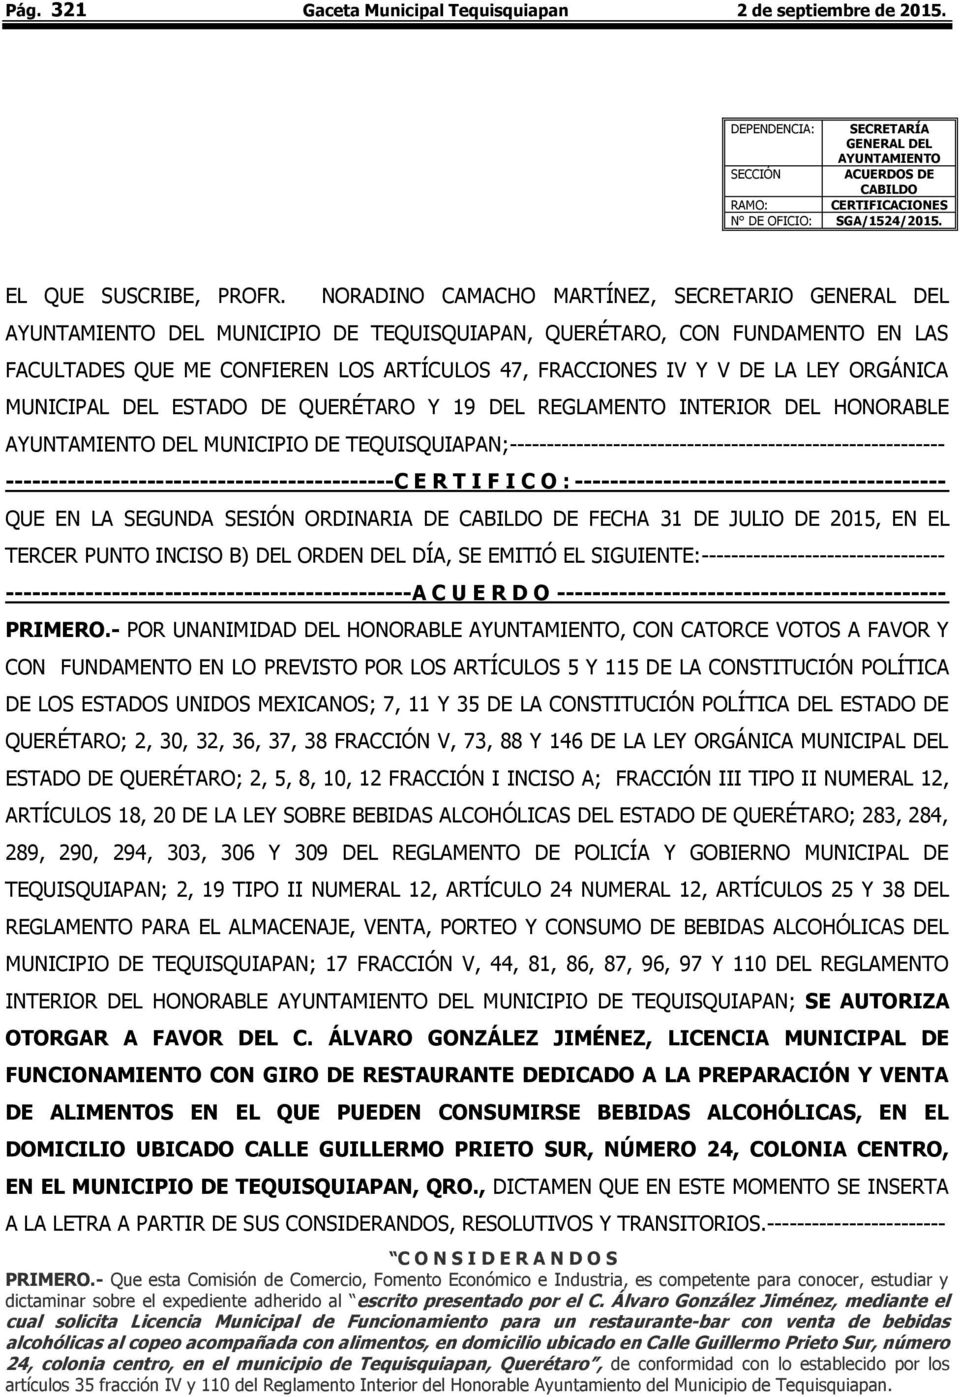 NORADINO CAMACHO MARTÍNEZ, SECRETARIO GENERAL DEL AYUNTAMIENTO DEL MUNICIPIO DE TEQUISQUIAPAN, QUERÉTARO, CON FUNDAMENTO EN LAS FACULTADES QUE ME CONFIEREN LOS ARTÍCULOS 47, FRACCIONES IV Y V DE LA